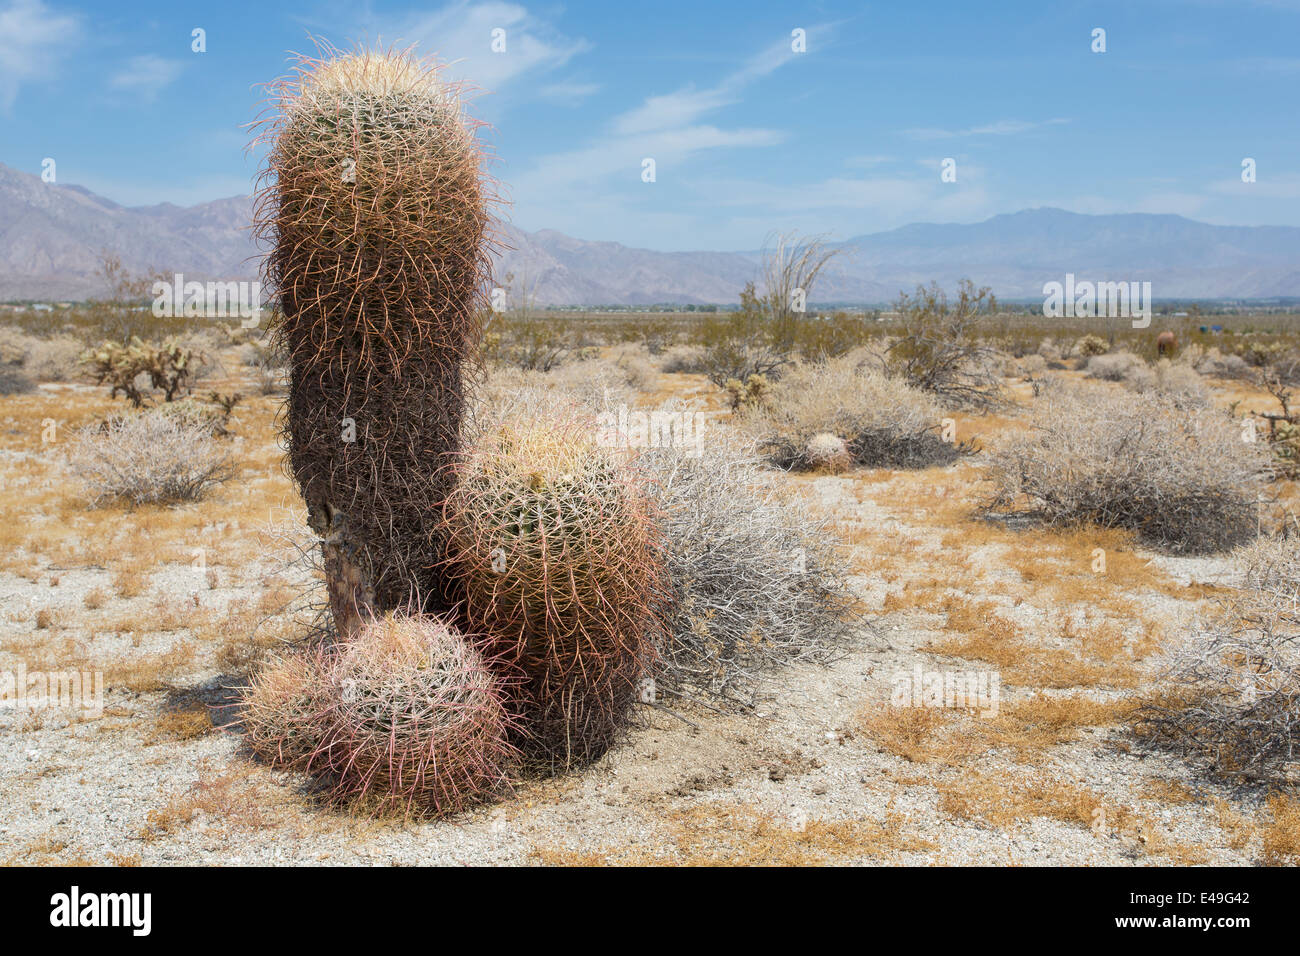 Barrel cactus, Ferocactus acanthodes, Anza-Borrego Desert, California, USA Stock Photo